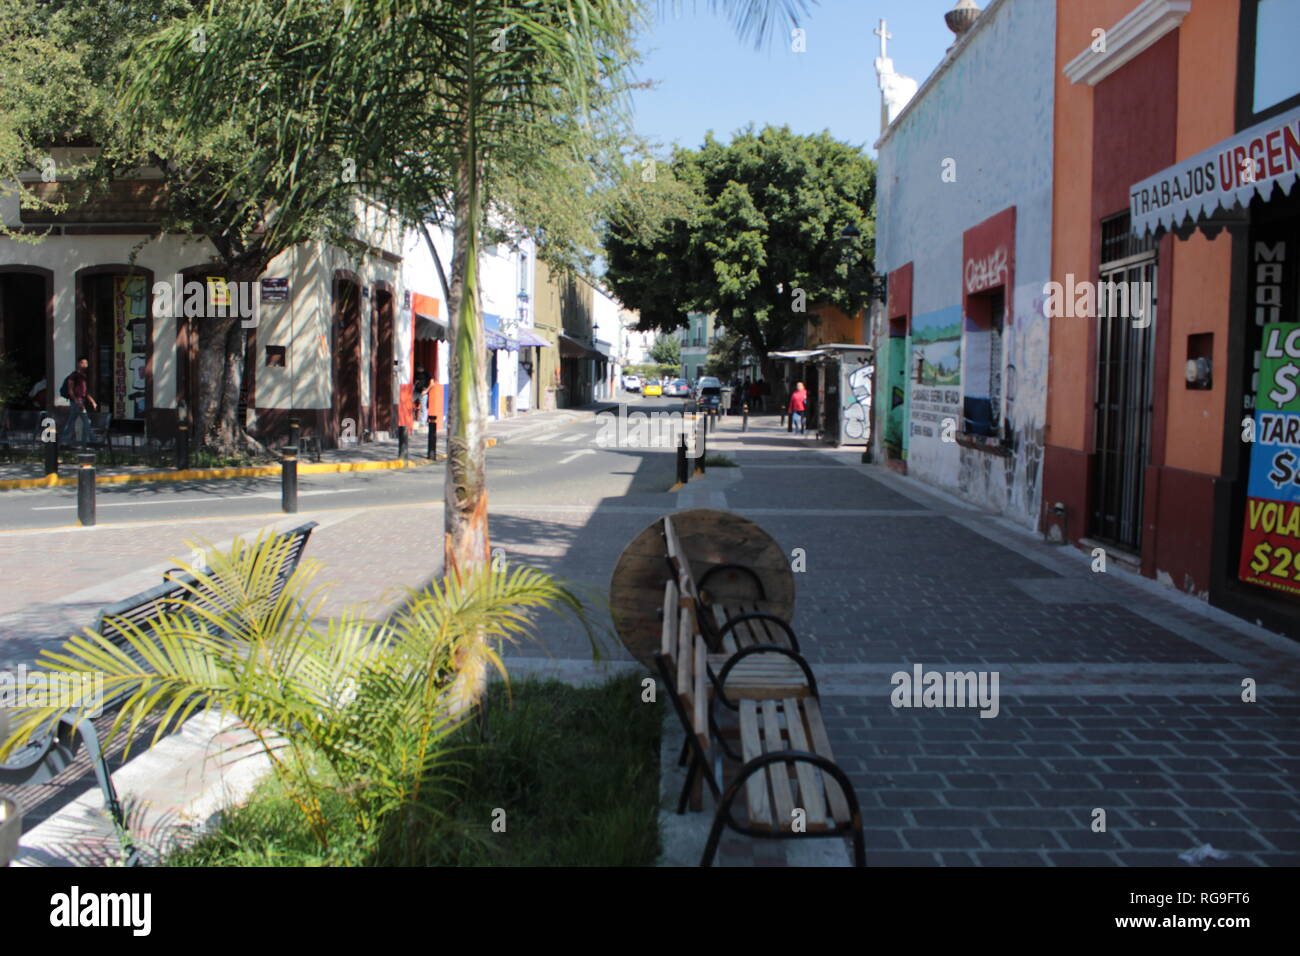 Foto tomada en las 9 esquinas ubicada en el centro de Guadalajara, Jalisco, México al medio dia en donde se aprecia una calle colonial muy pintoresca Stock Photo